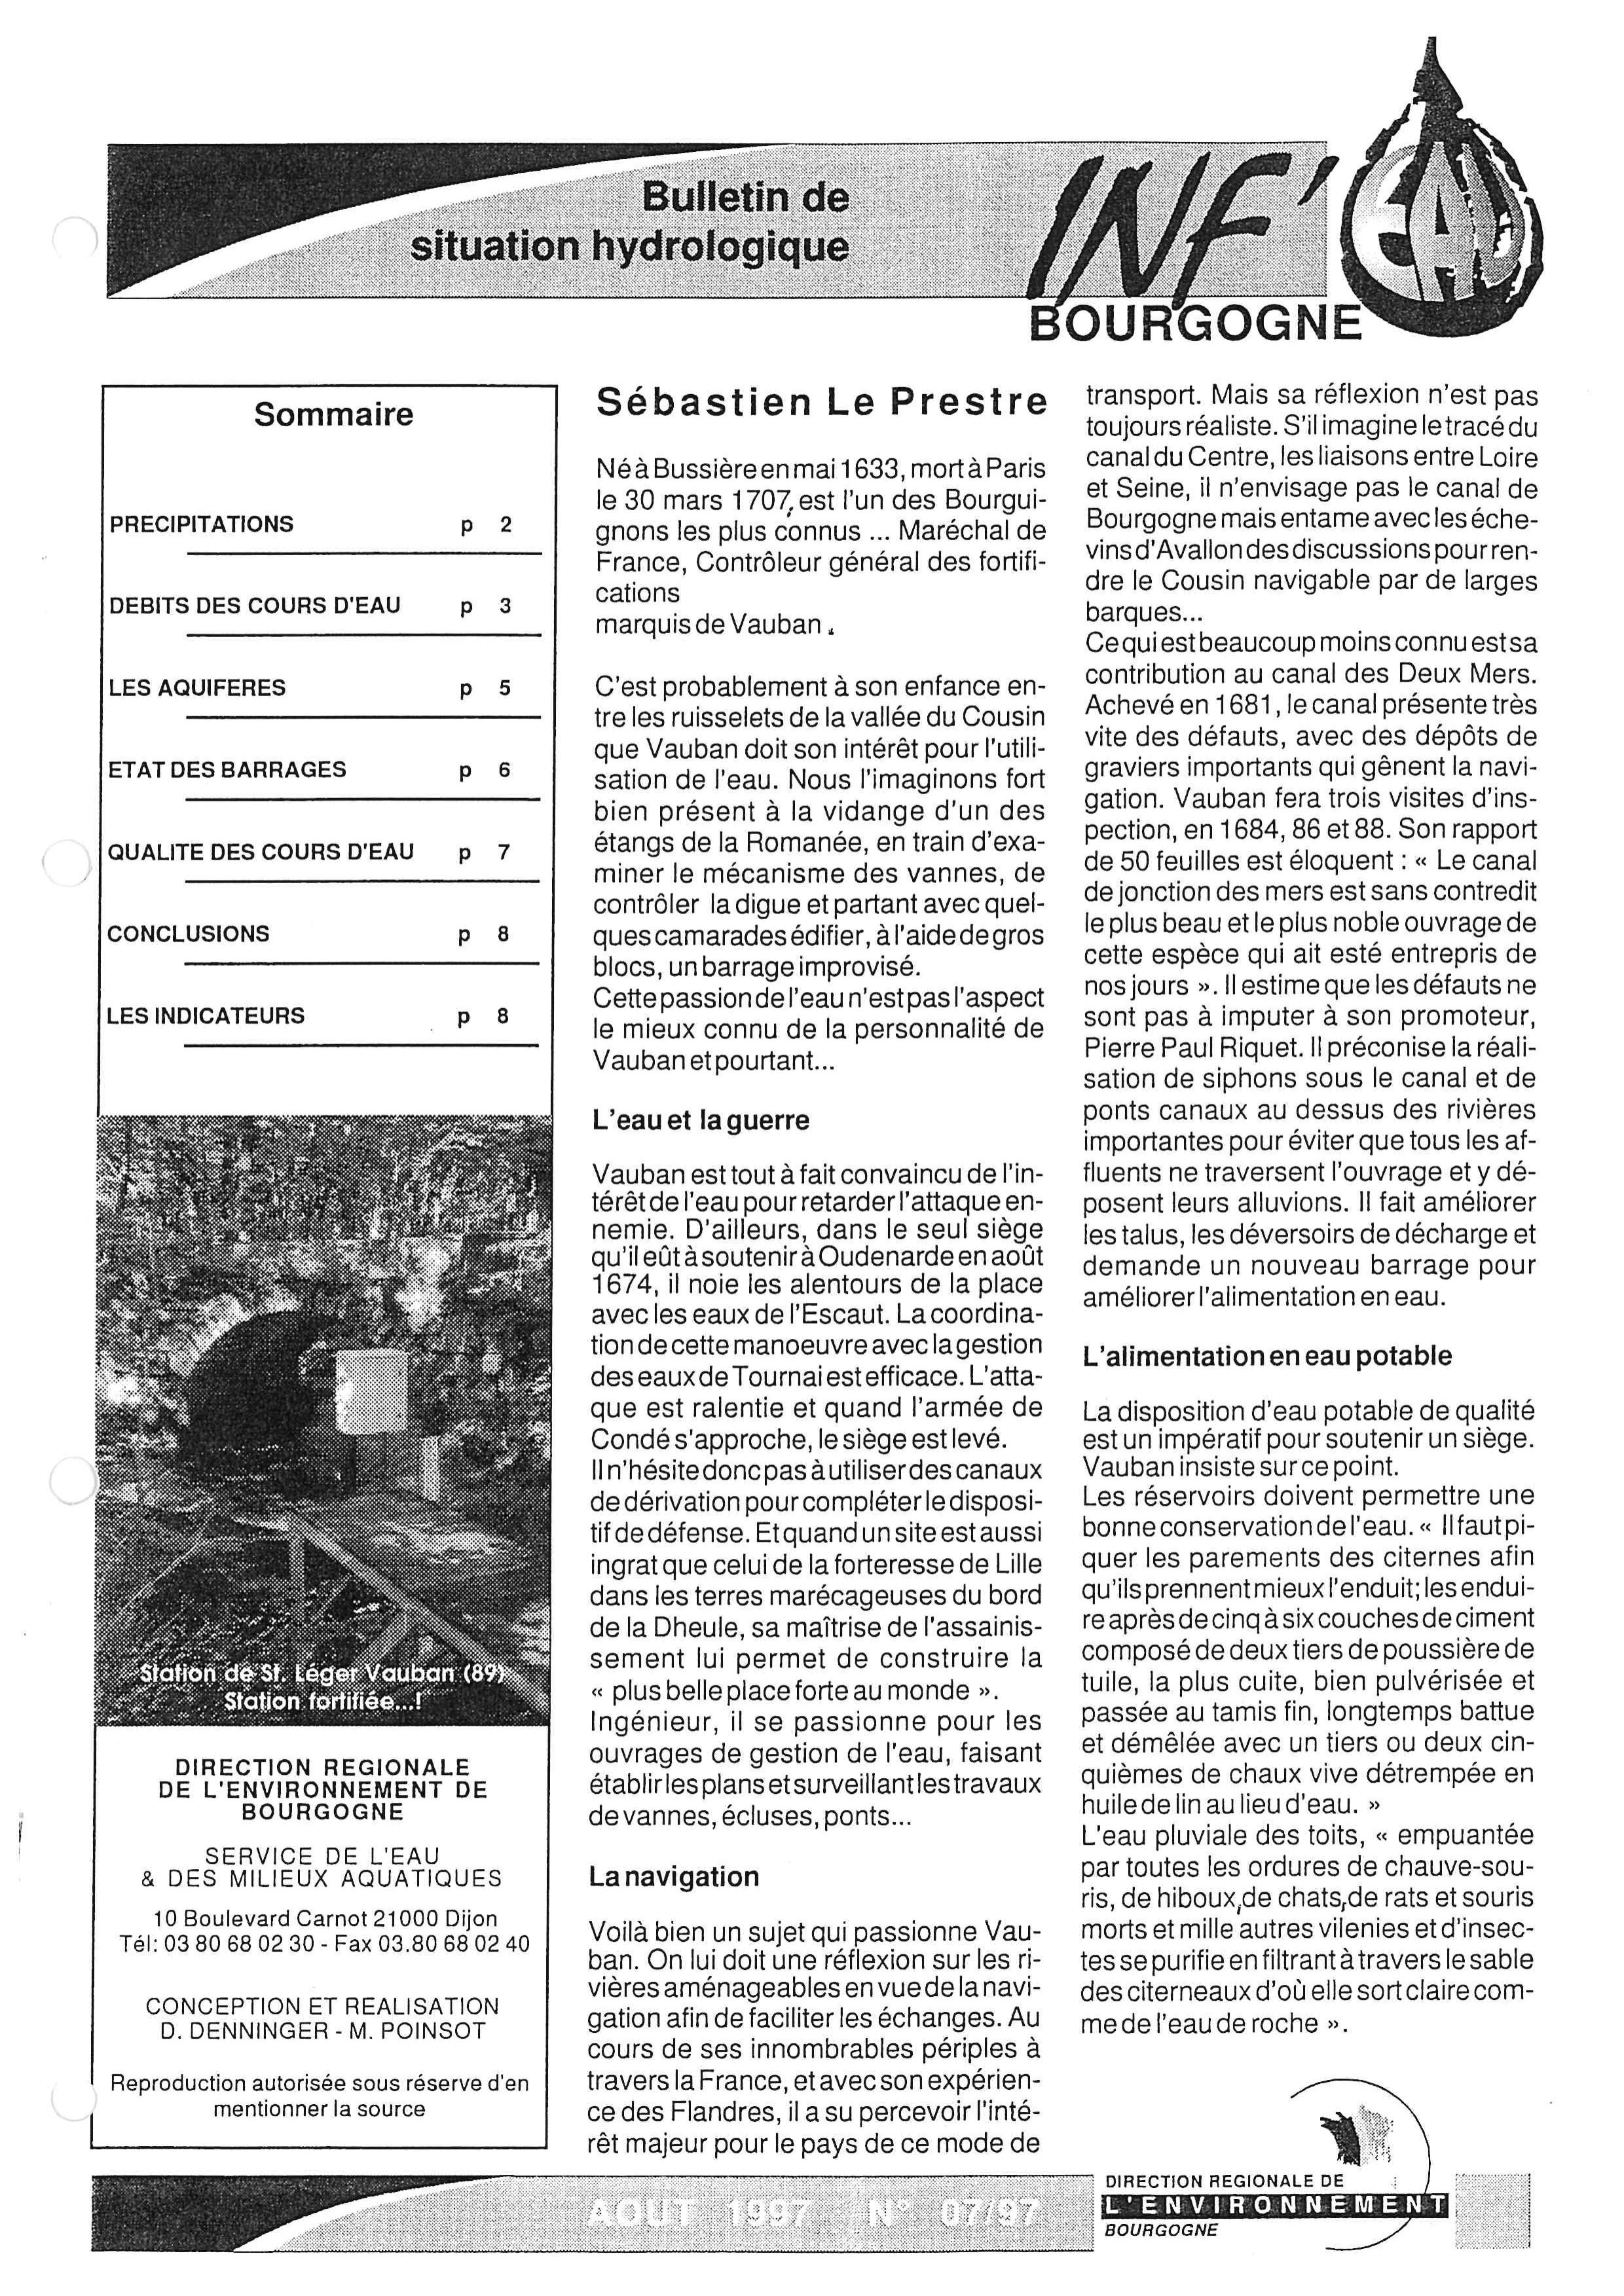 Bulletin hydrologique du mois de juillet 1997